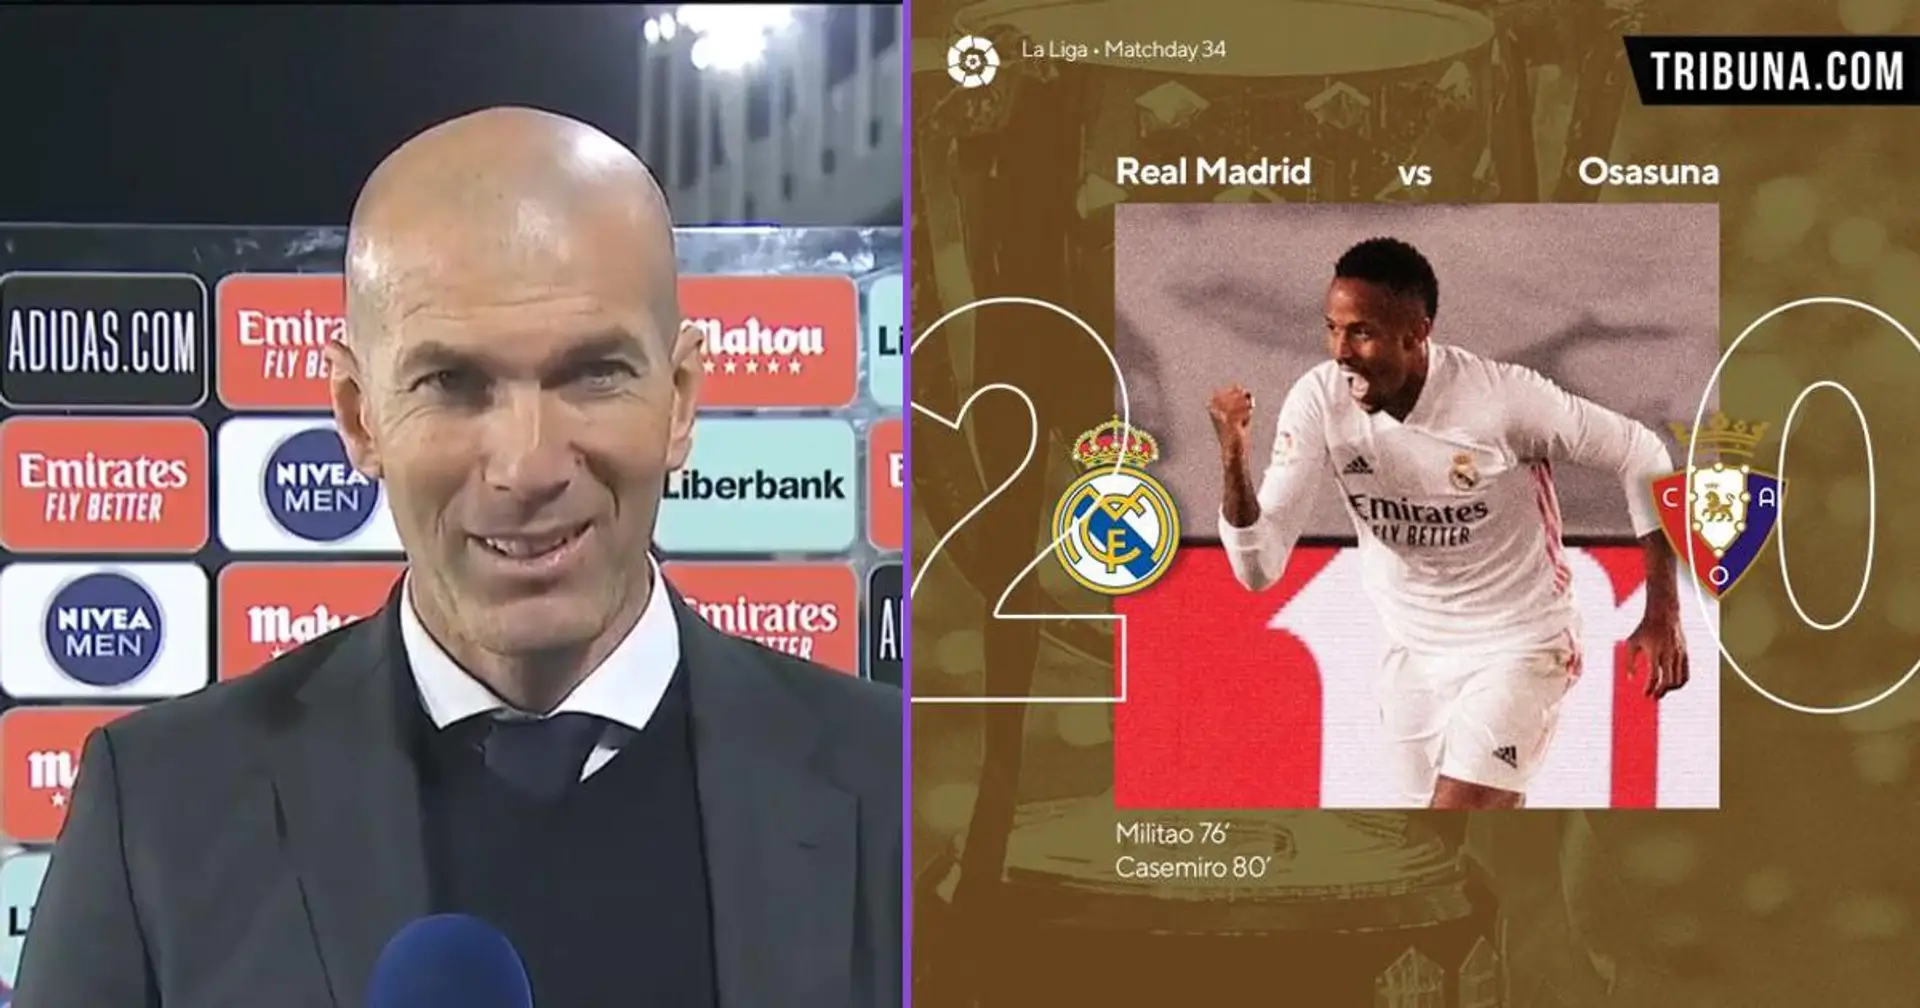 Zidane révèle ce qu'il a dit aux joueurs madrilènes à la mi-temps pour remporter la victoire en seconde période contre Osasuna